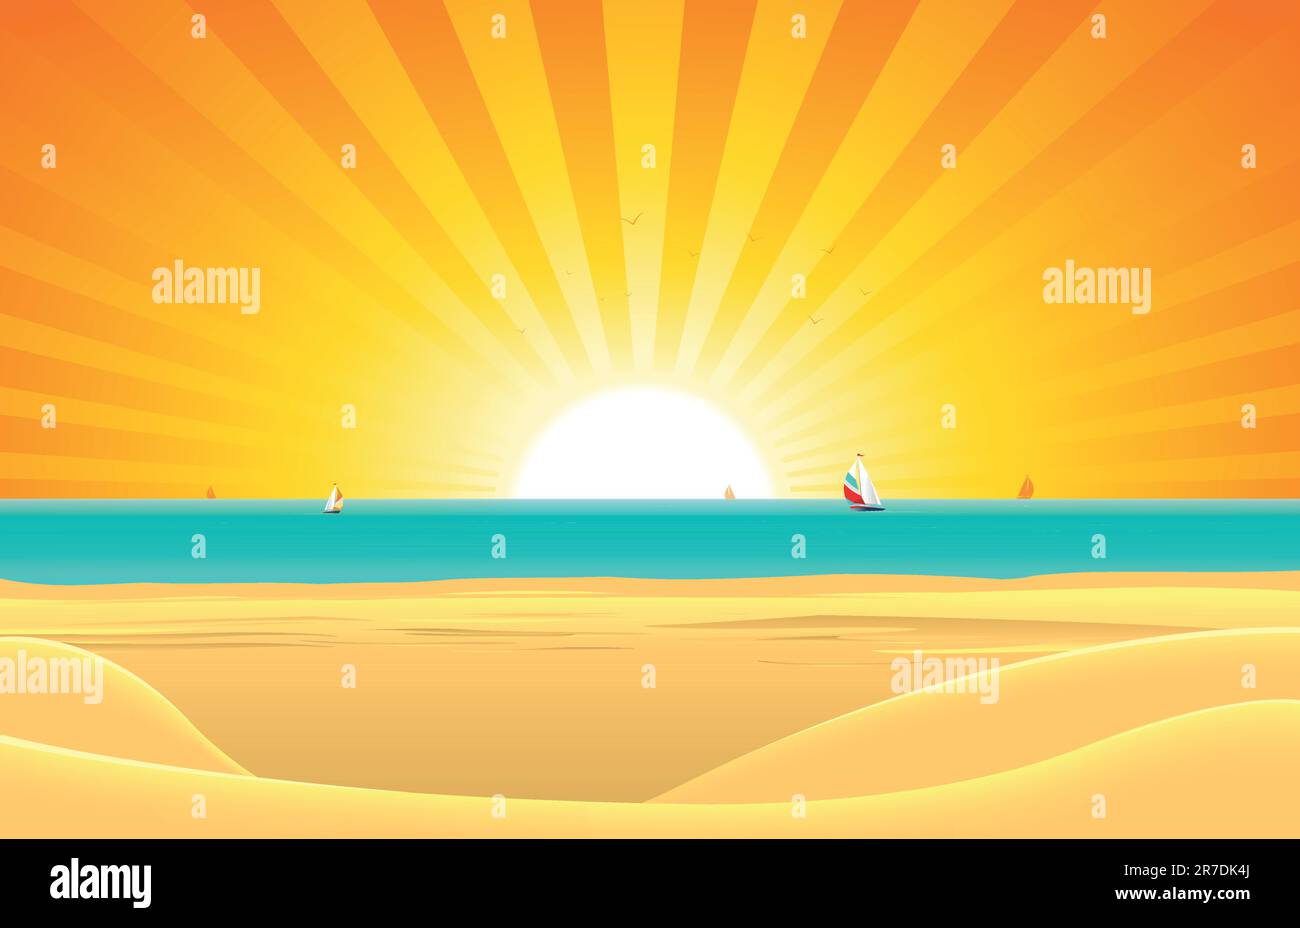 Abbildung eines Sommer Sonnenstrand Plakat Hintergrund, Horizont über Wasser und Segelboote Stock Vektor